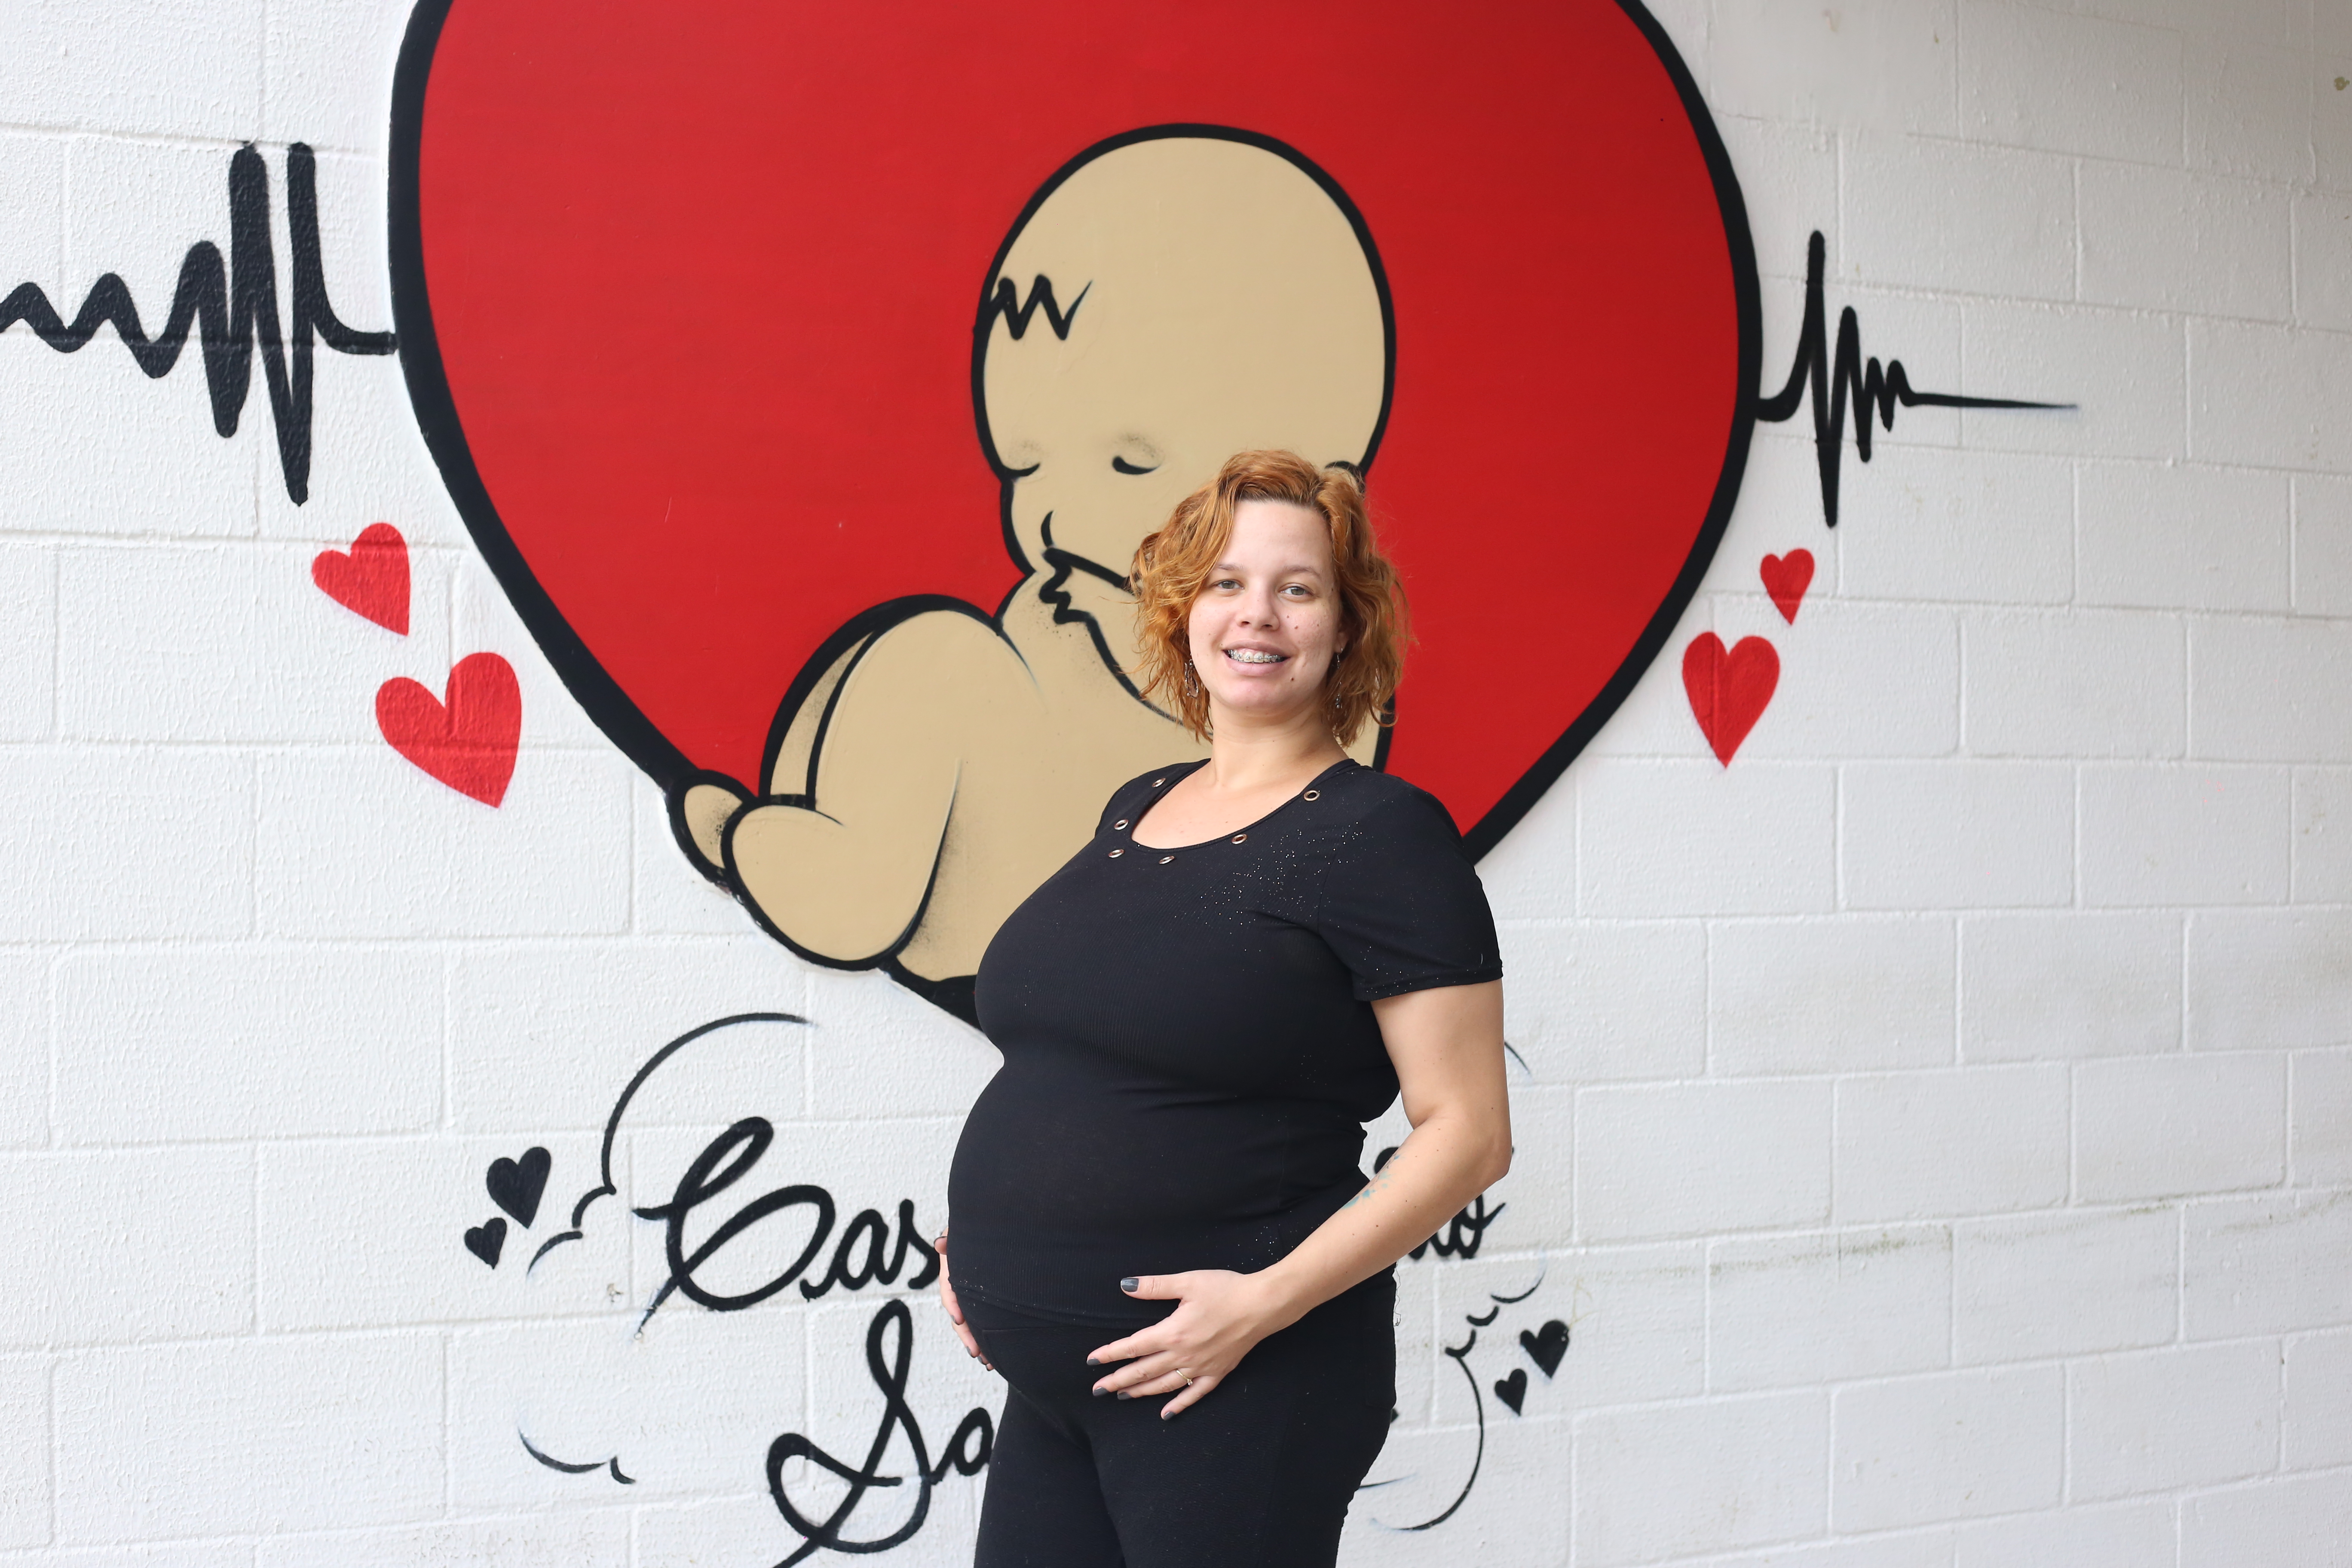 A foto mostra uma mulher jovem de cabelos ruivos; ela veste roupas pretas, está grávida e posa em frente a uma parede decorada com a pintura de um bebê dentro de um coração, que imita um útero